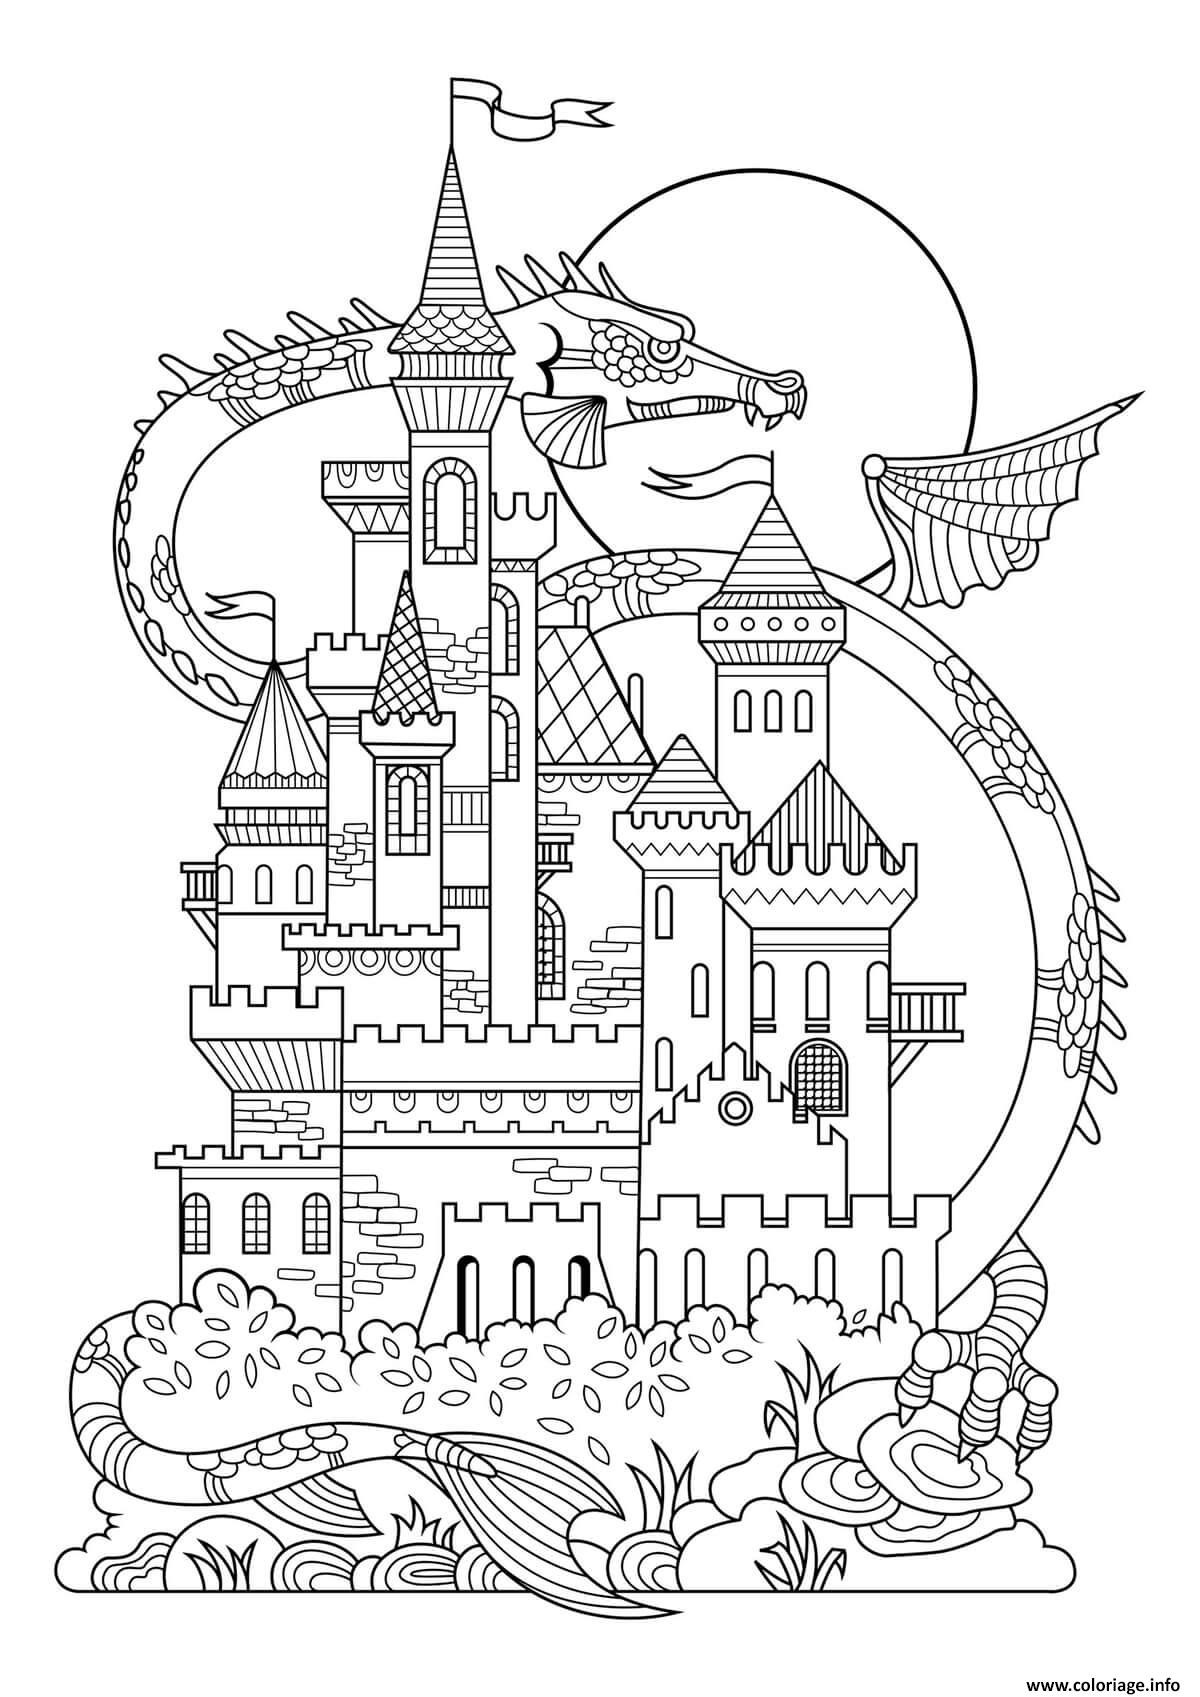 Dessin chateau dragon Coloriage Gratuit à Imprimer